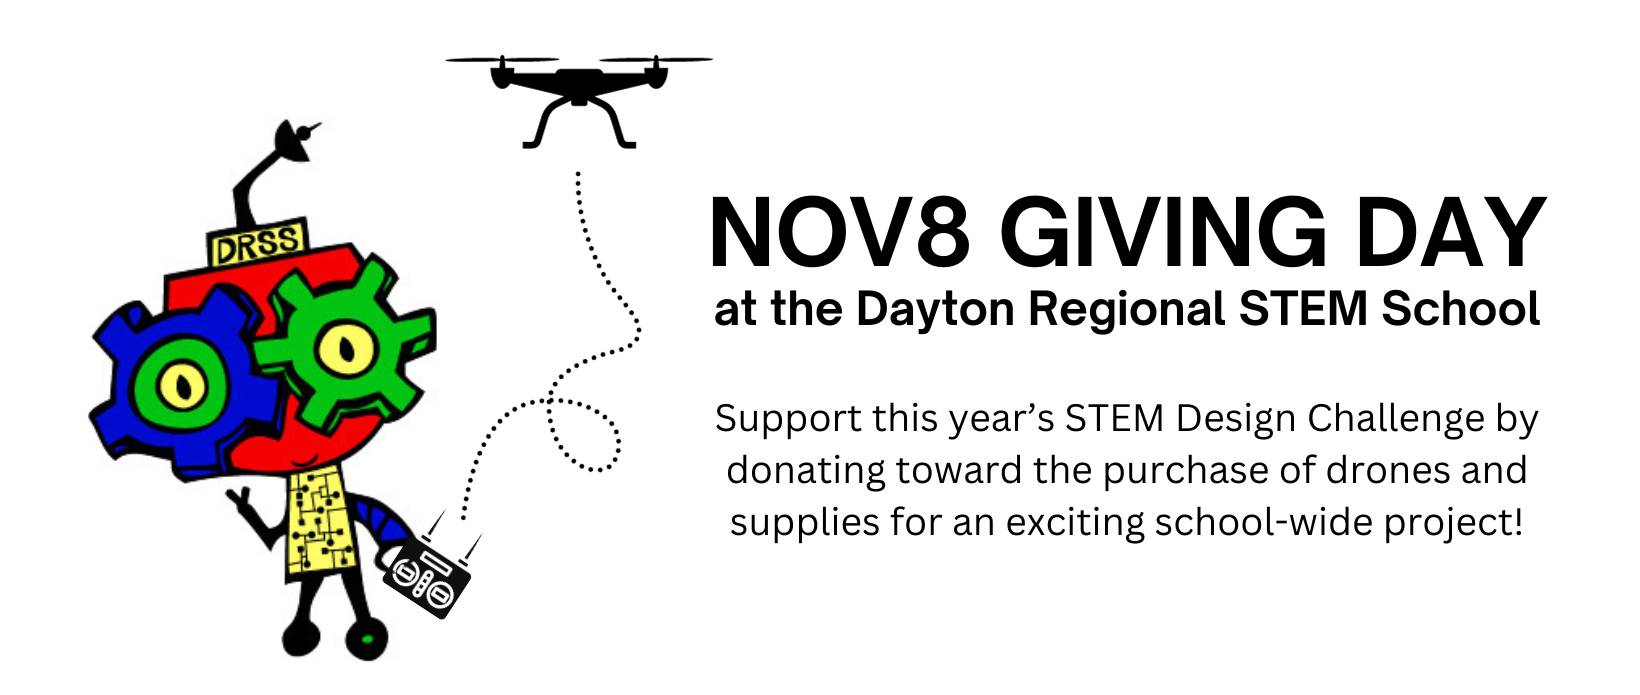 NOV8 GIVING DAY at the Dayton Regional STEM School - Copy (2)